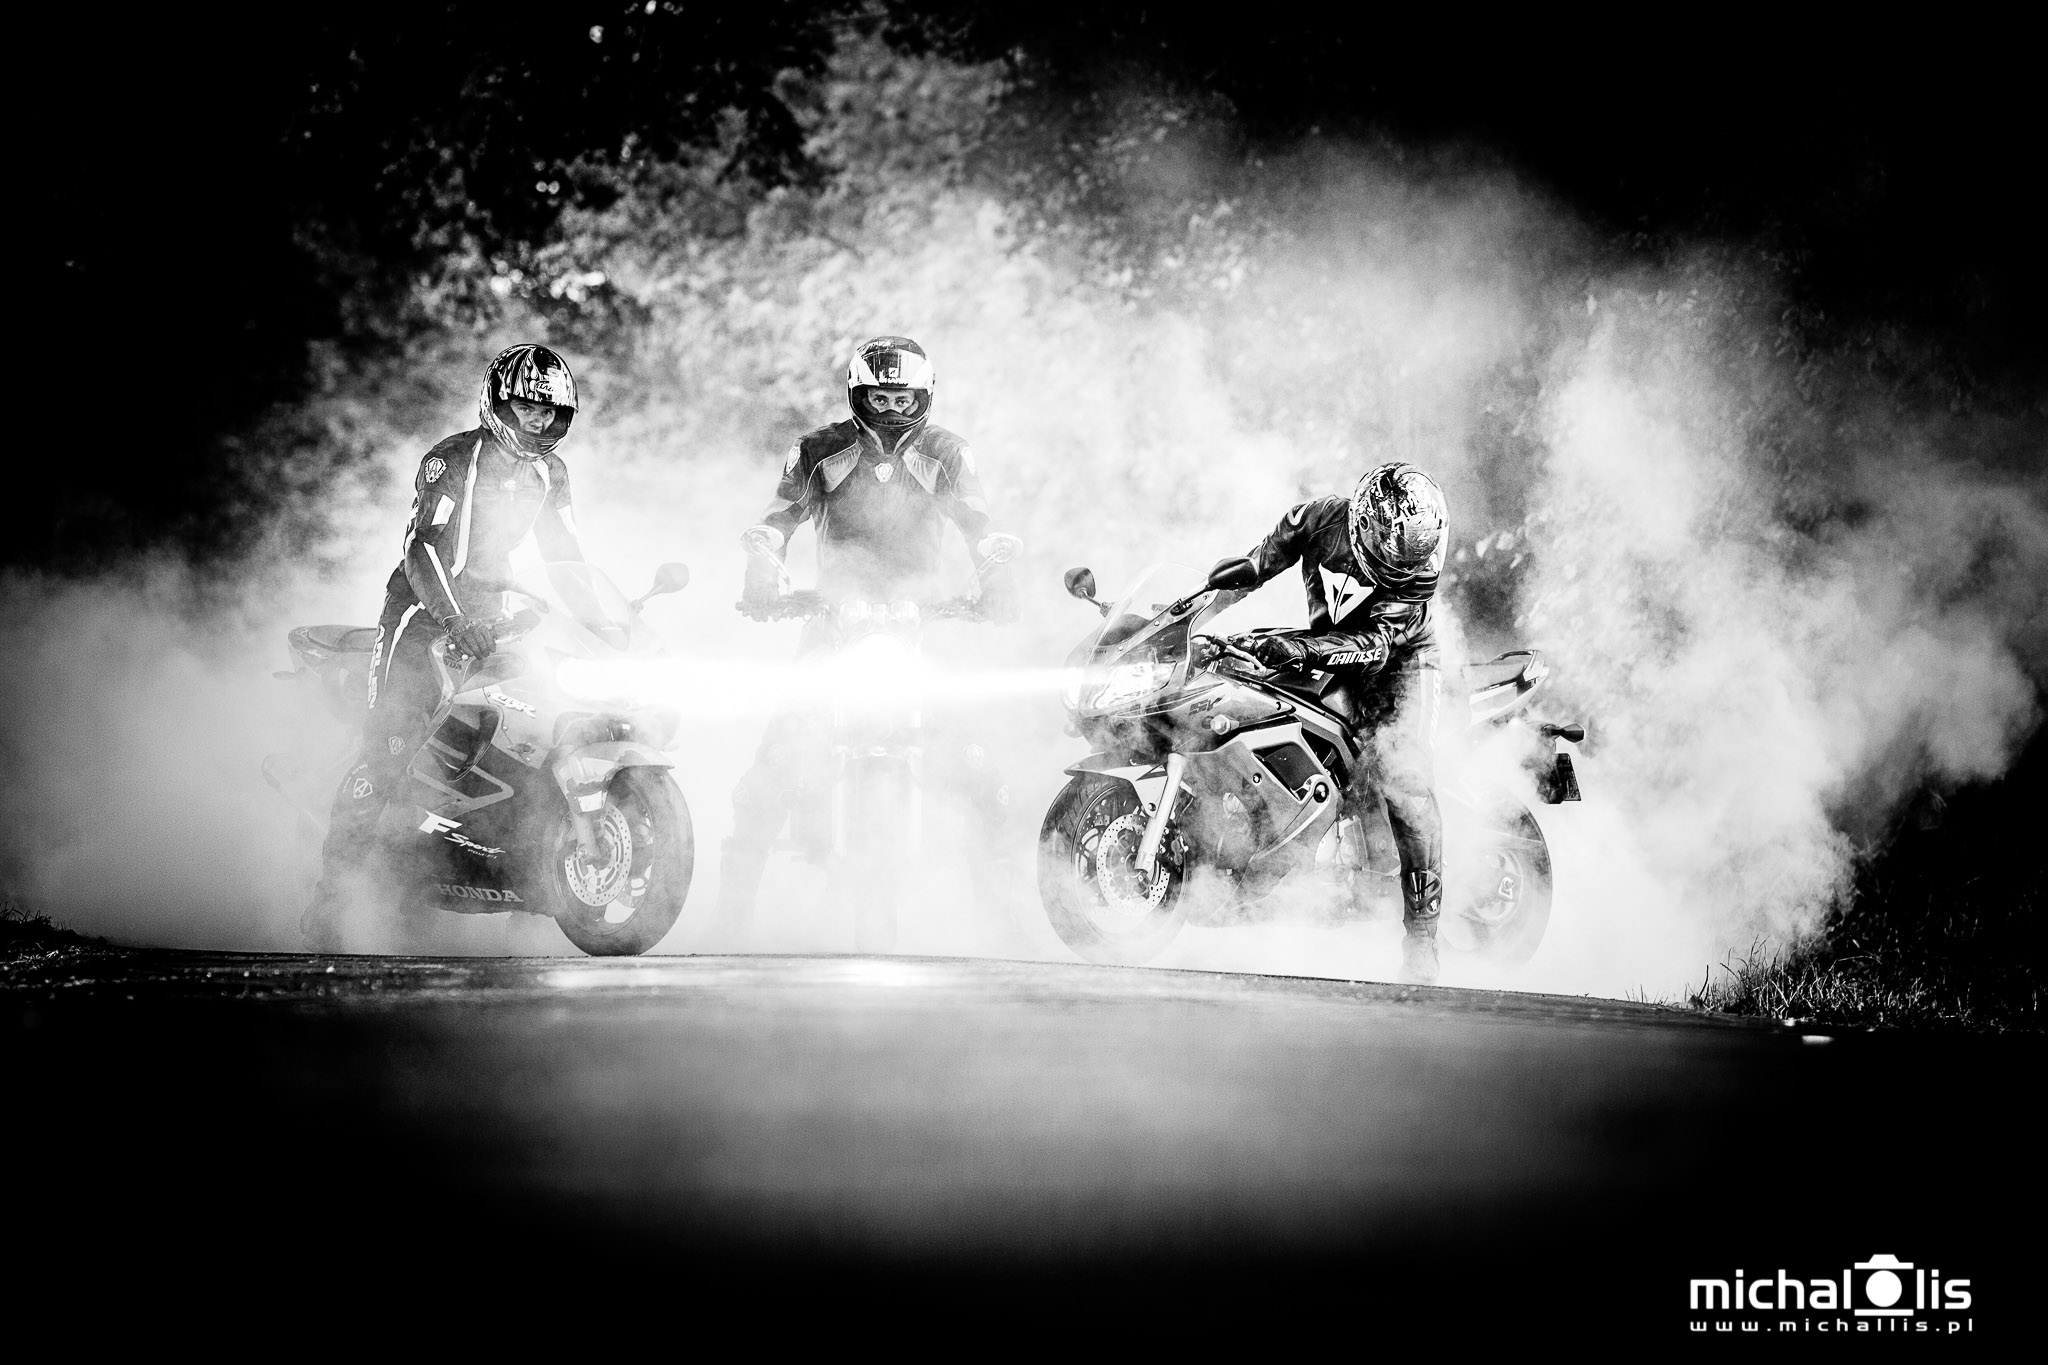 Sesja na motocyklach - palenie gumy - zdjęcie grupowe